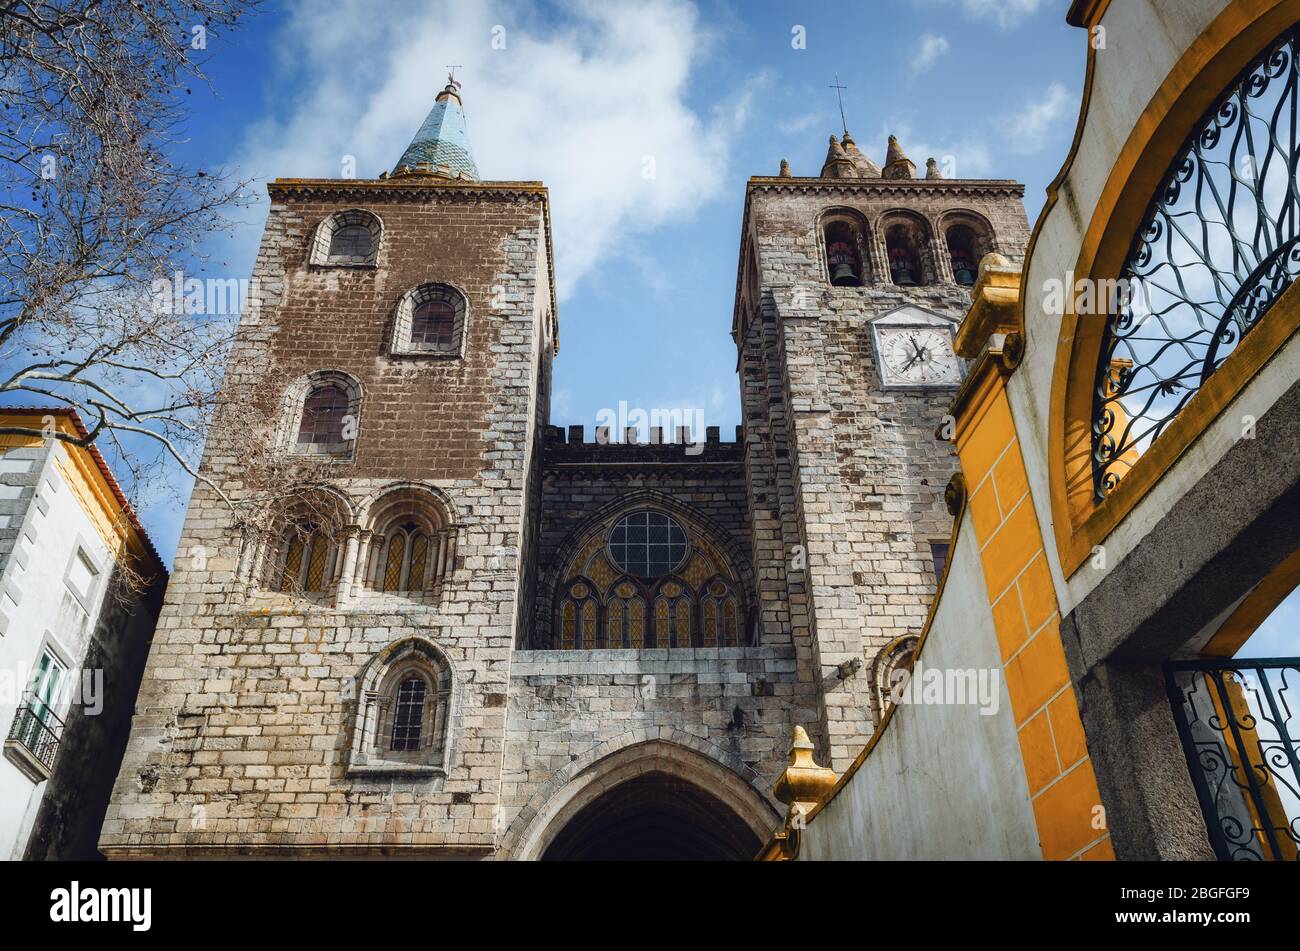 Vista esterna della cattedrale di Evora (se da Evora), la chiesa monumentale principale della regione dell'Alentejo in Portogallo, dedicata all'assunzione dei vi Foto Stock